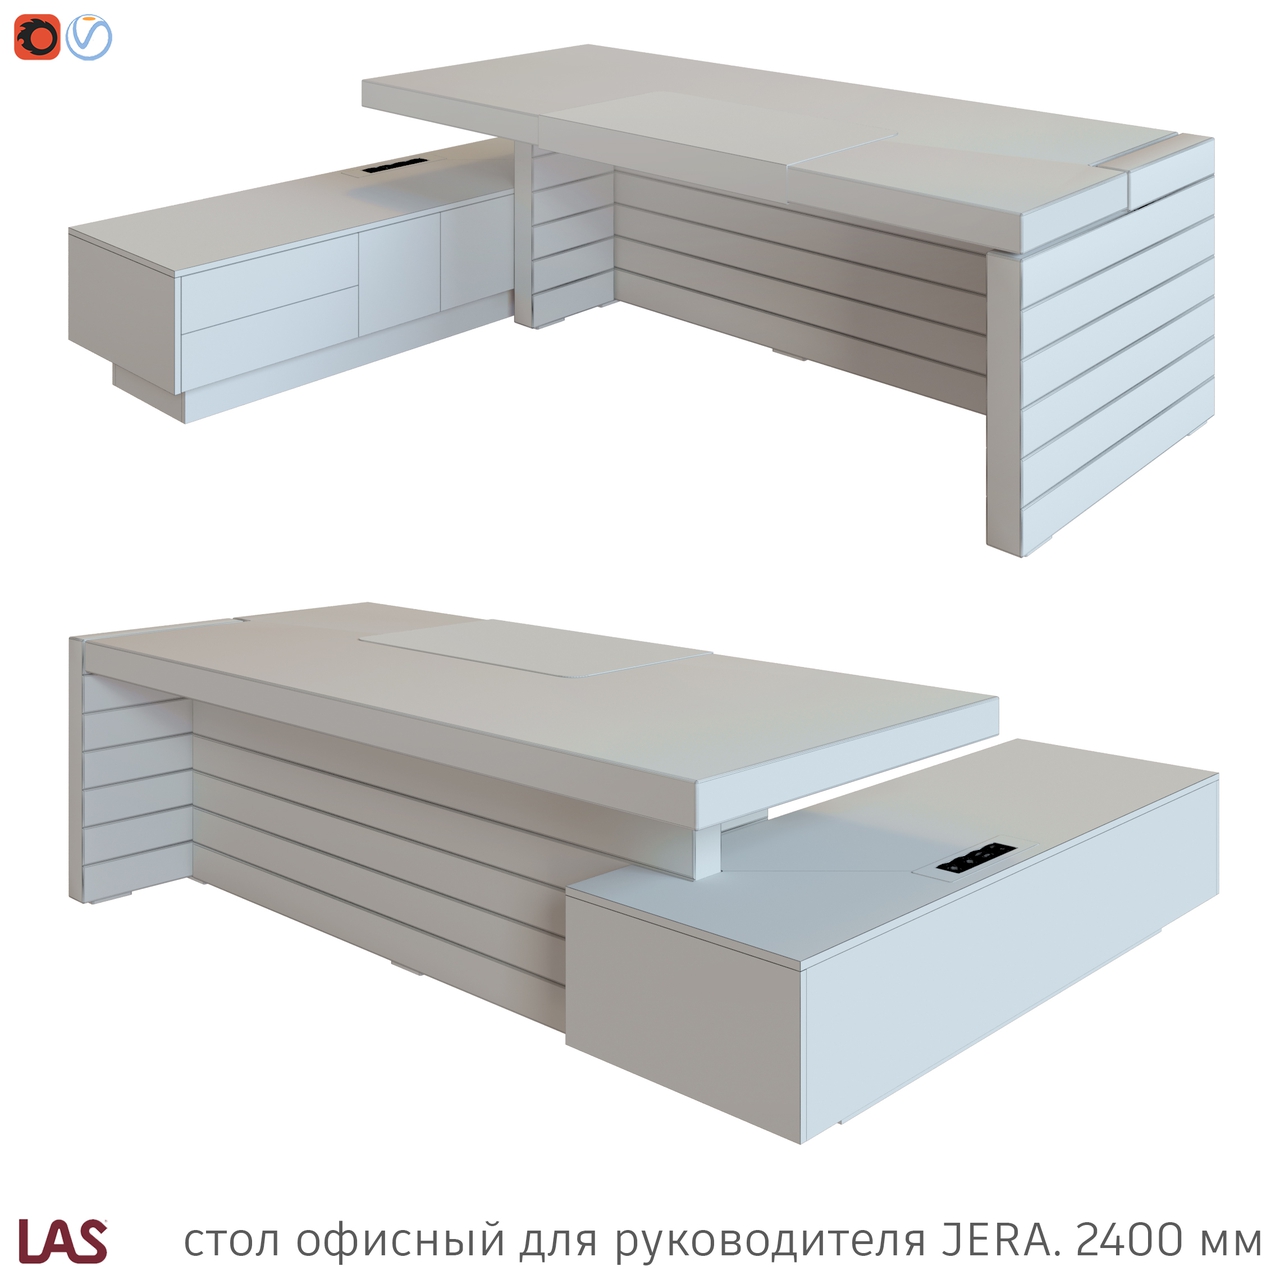 Превью G 3D-модели офисного стола LAS Jera 159929 / 159933